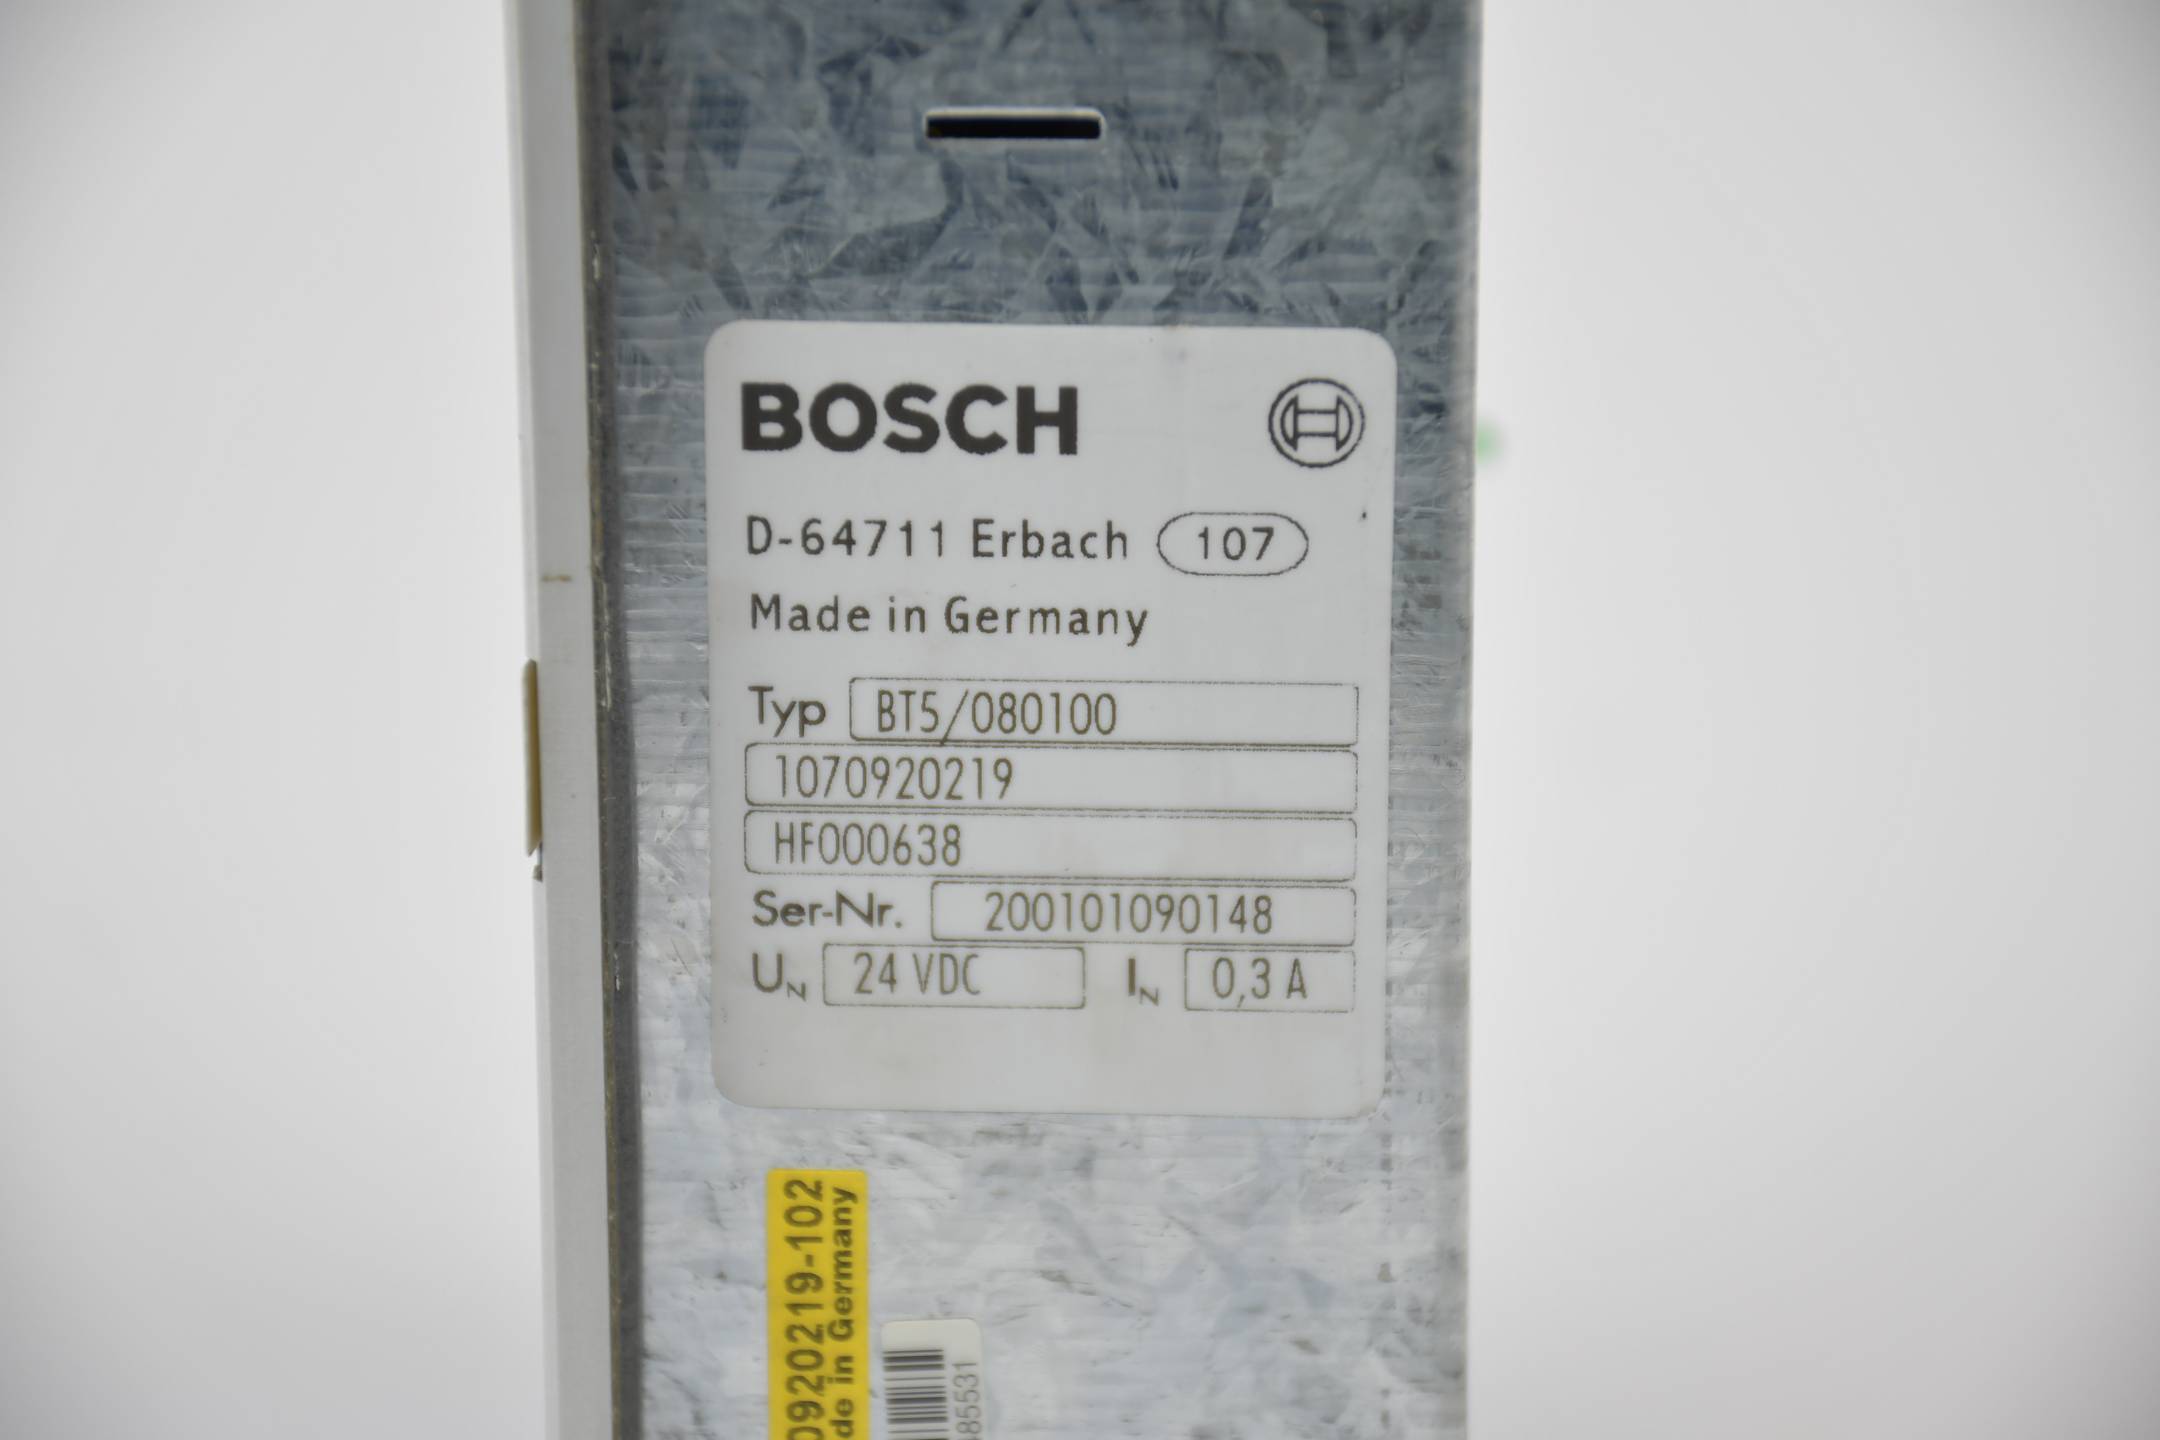 Bosch Sütron Bedienterminal BT 5 BT5/080100 ( 1070920219-102 ) HF000638 